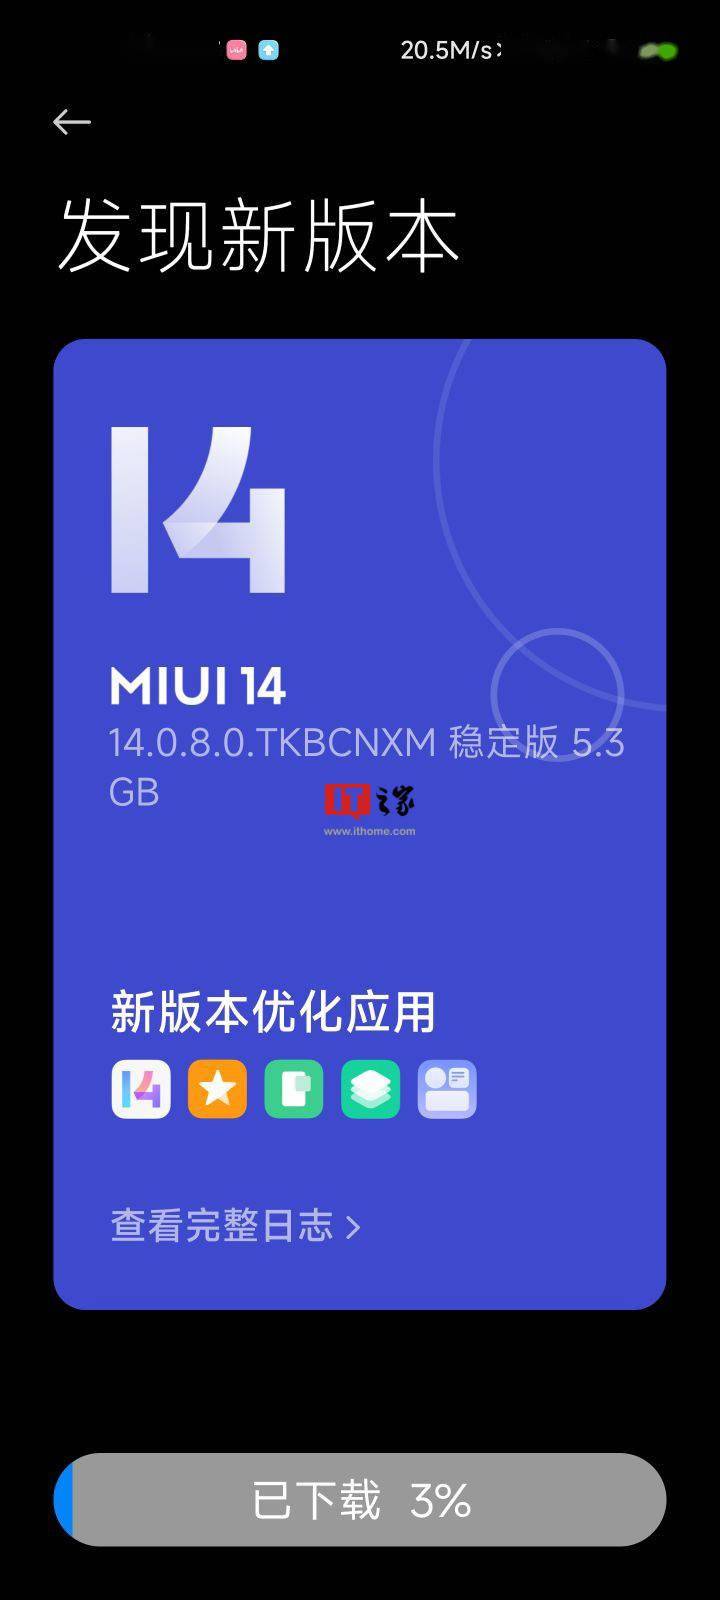 小米11手機開始推送 MIUI 14 穩定版系統 14.0.8.0.TKBCNXM更新